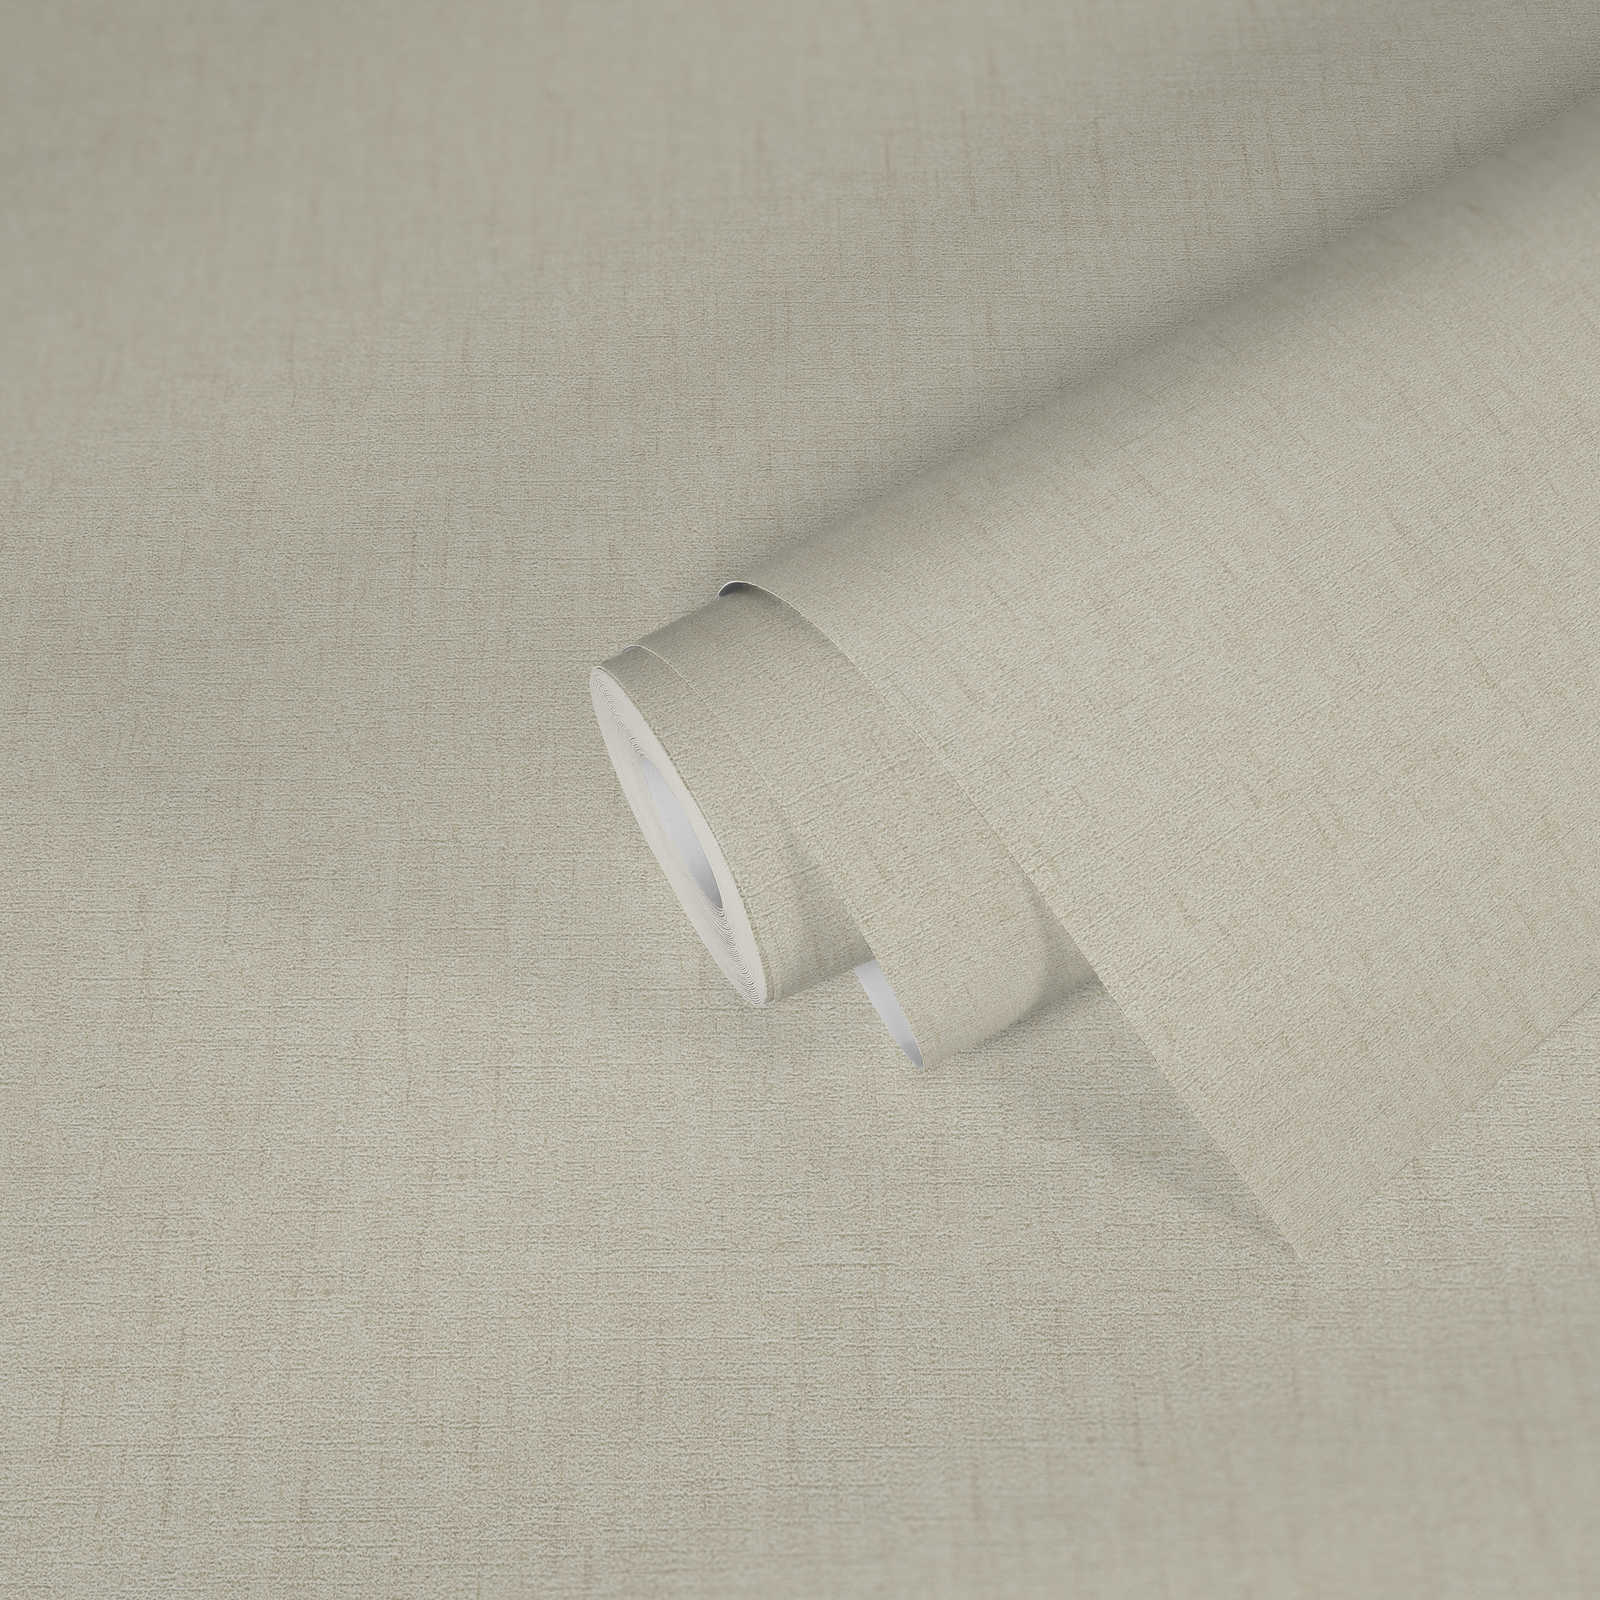             VERSACE eenheidsbehang met glinsterende linnenstructuur - grijs, crème
        